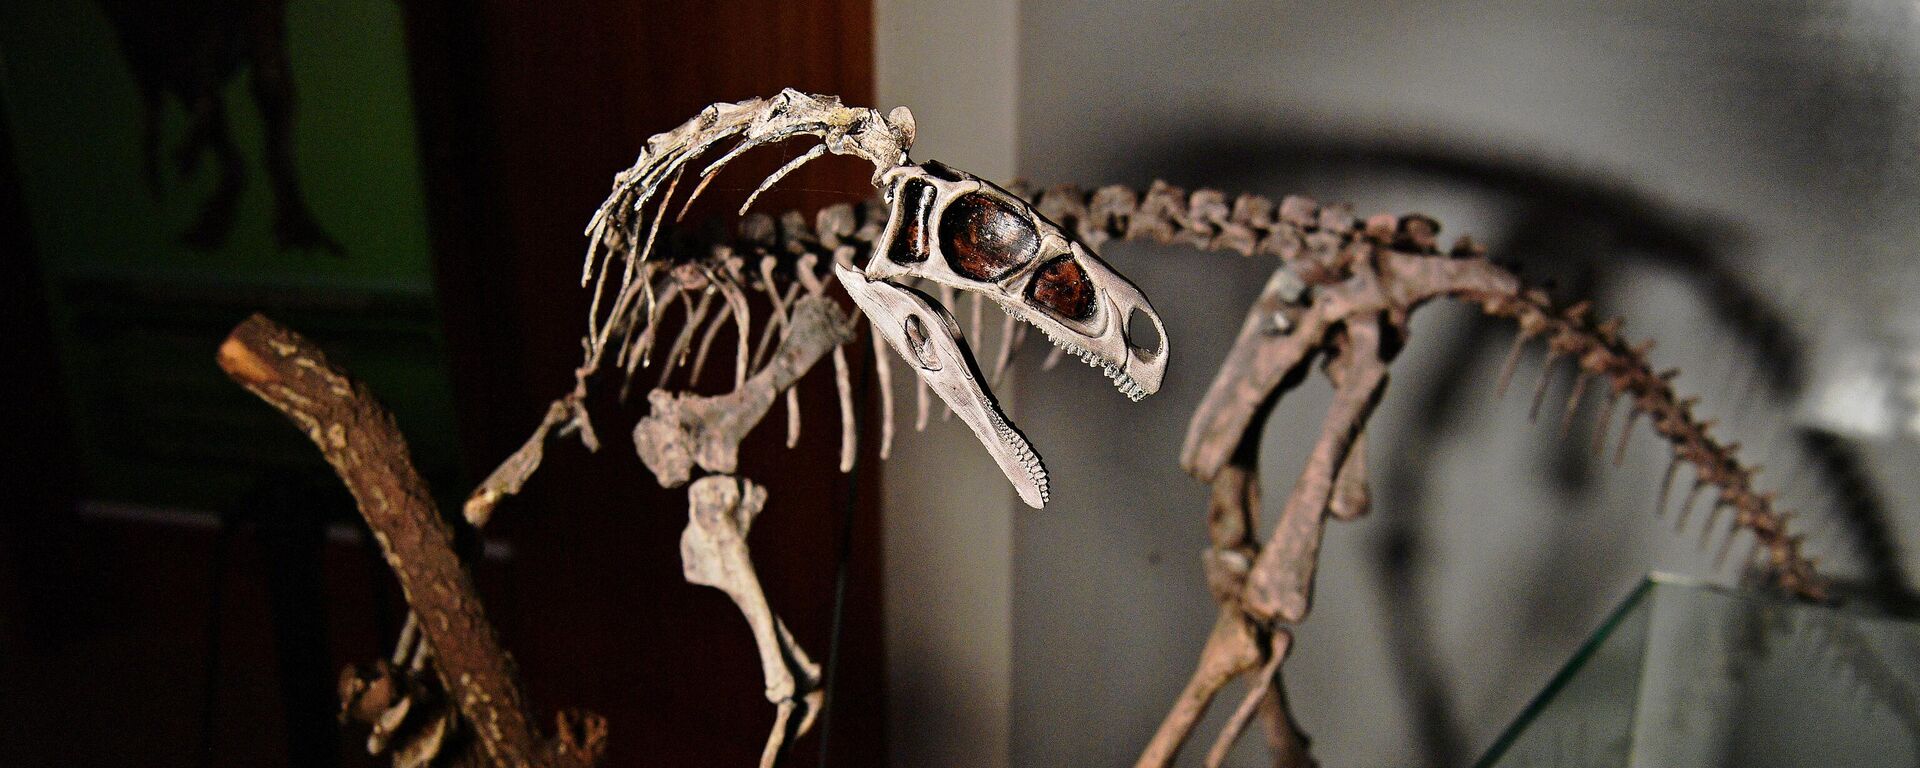 اسکلت فسیل شده 233 میلیون ساله Bagualosaurus Agudoensis در CAPPA، مرکز تحقیقات دیرینه شناسی و کمکی برزیل در سائو ژوائو دو فلسطین، برزیل، 2 دسامبر 2019 - Sputnik بین المللی 1920 01/26/2020 مشاهده می شود.